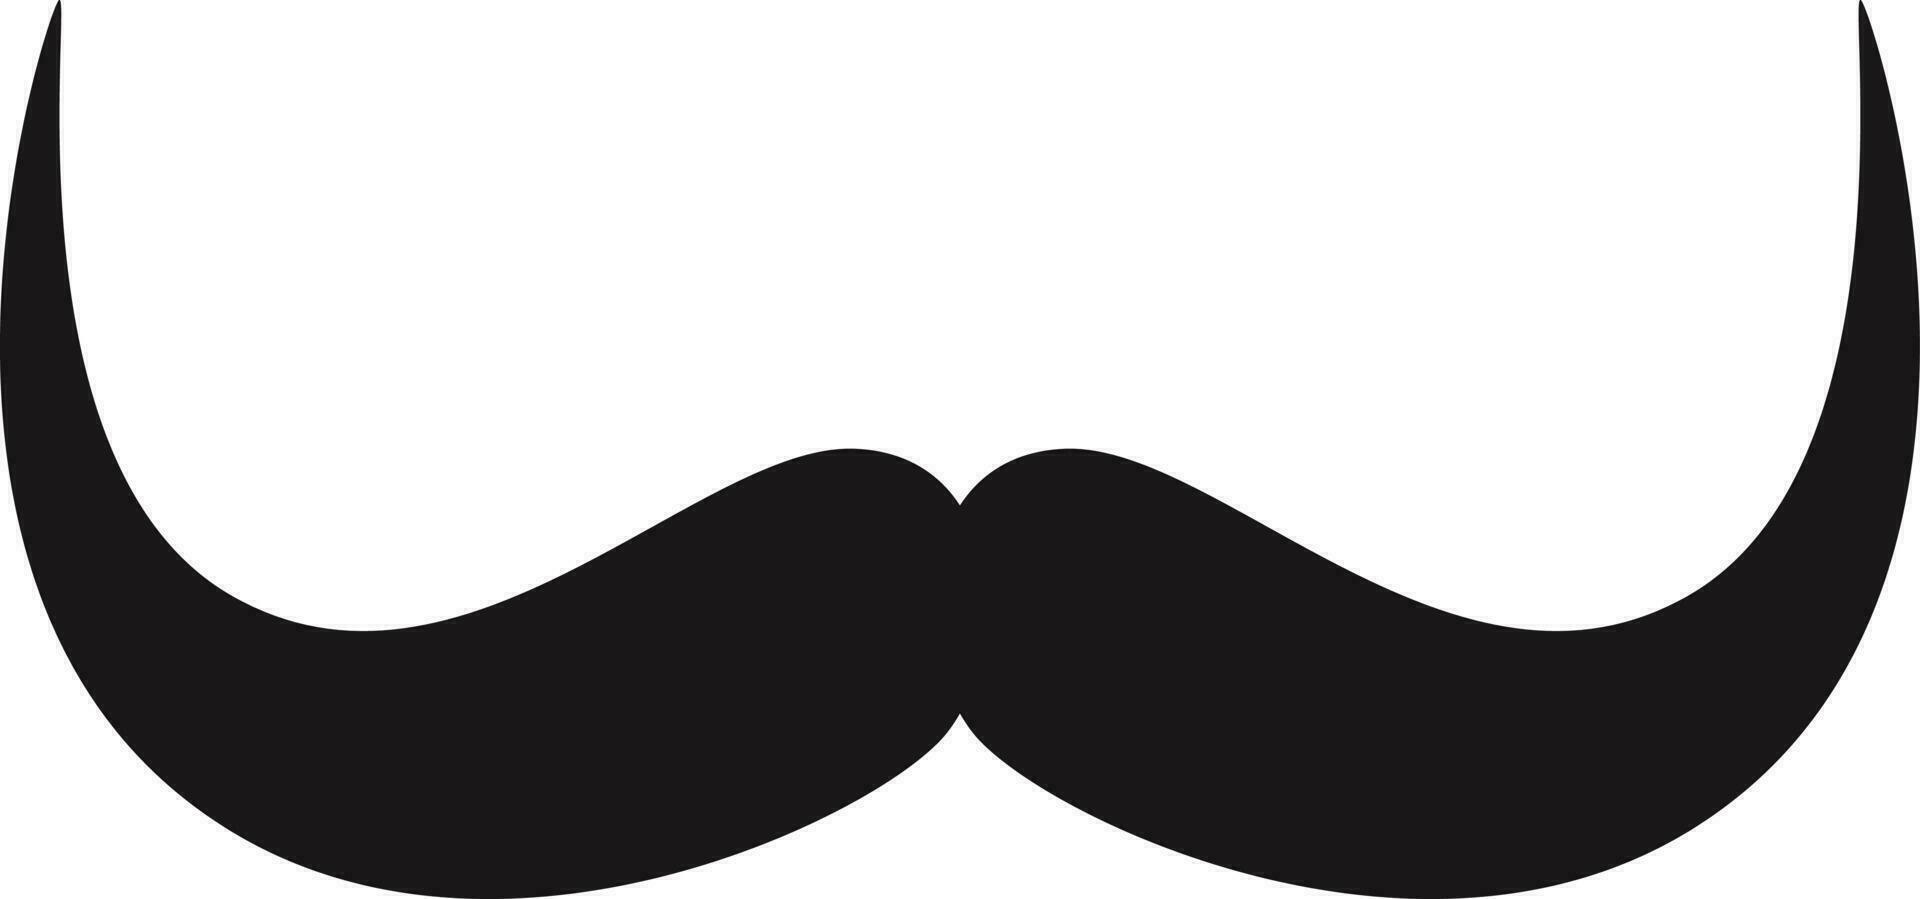 moustache cartoon illustration vector